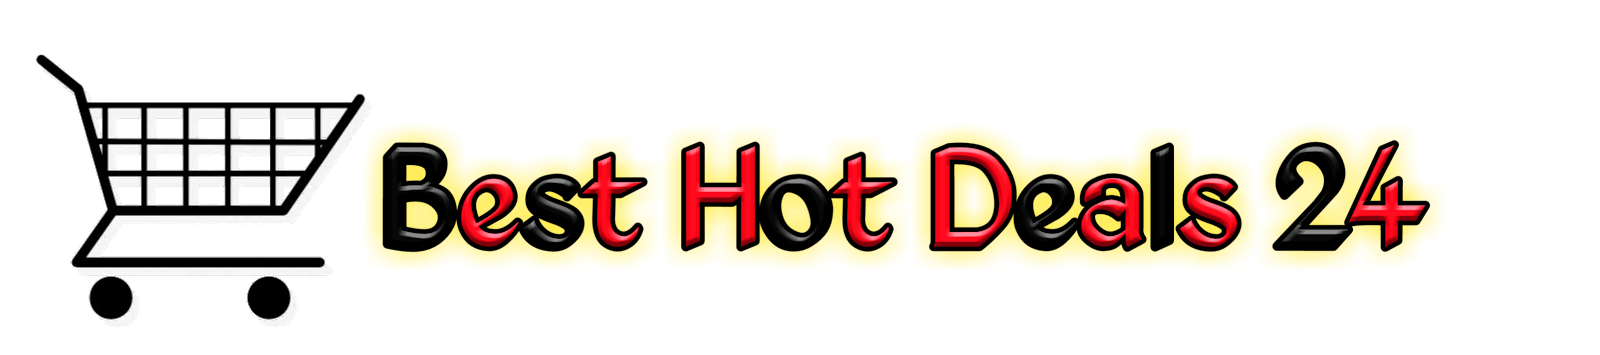 Best Hot Deals 24